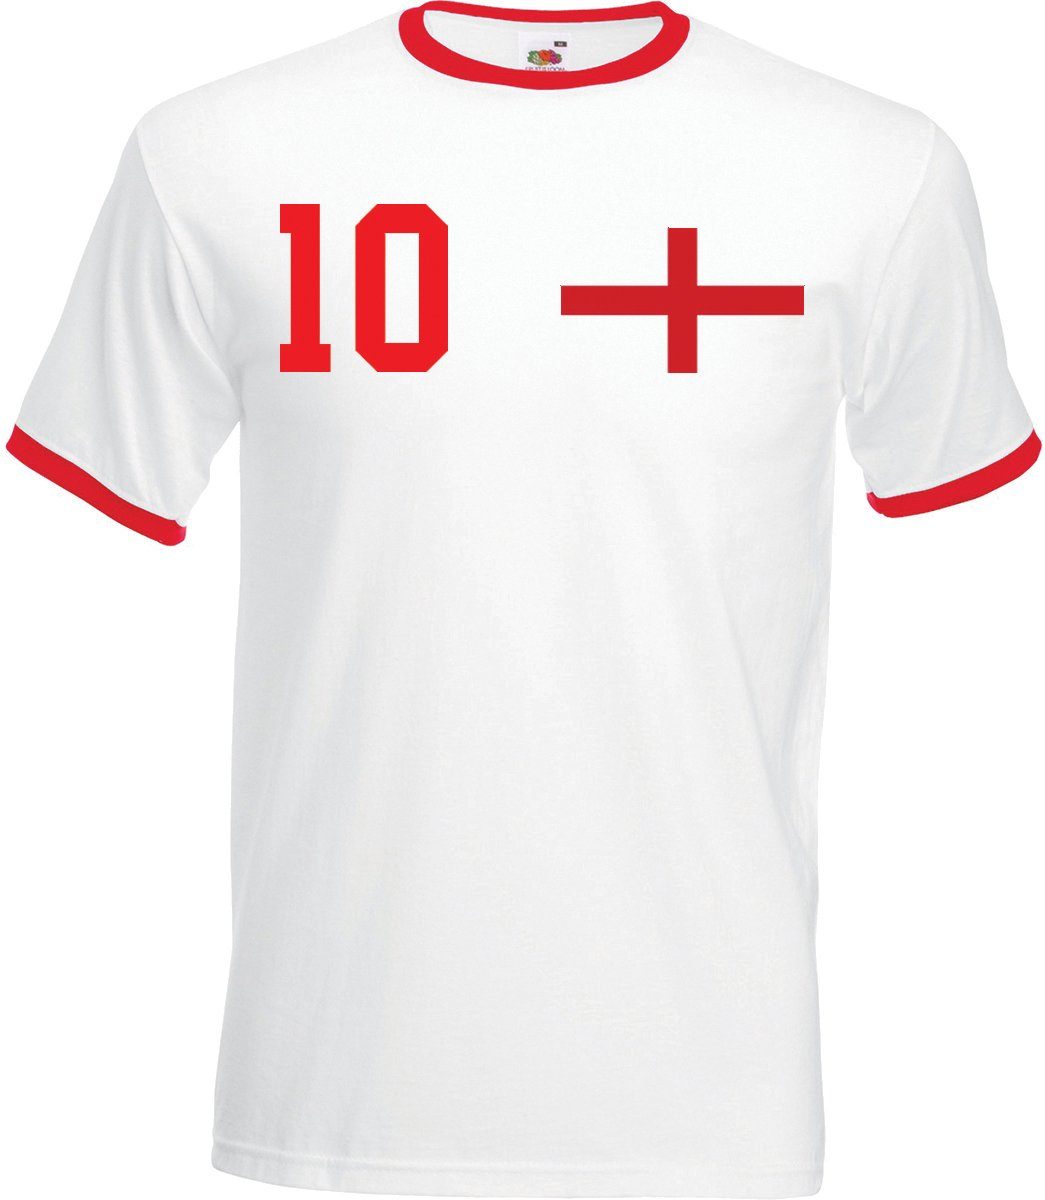 Youth Designz T-Shirt England Herren T-Shirt im Fußball Trikot Look mit trendigem Motiv Rot-Weiß